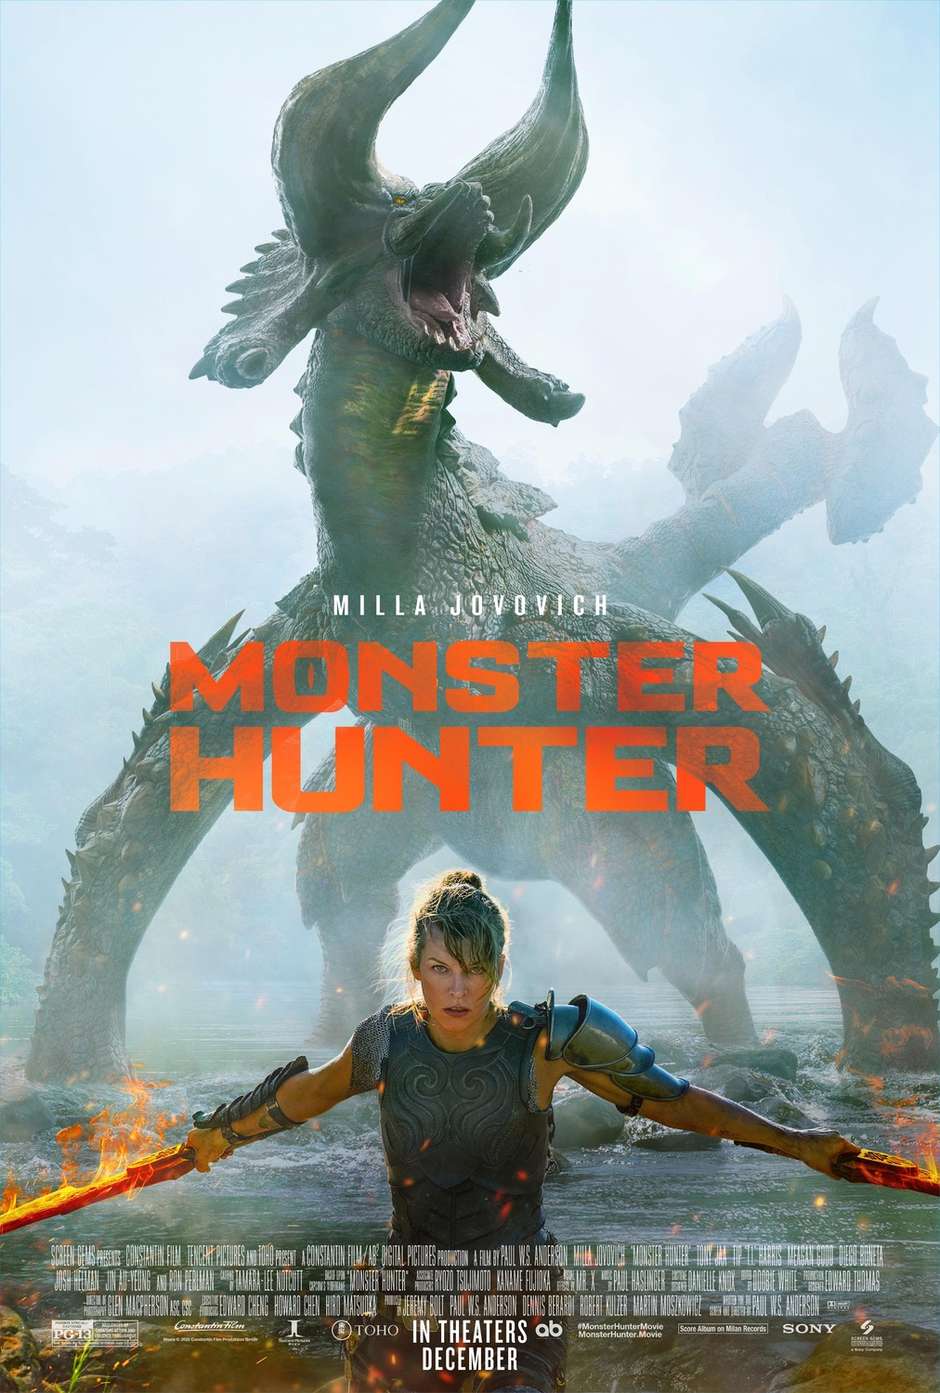 Filme de live-action de Monster Hunter, do diretor de Resident Evil,  torna-se sucesso da Netflix 3 anos depois